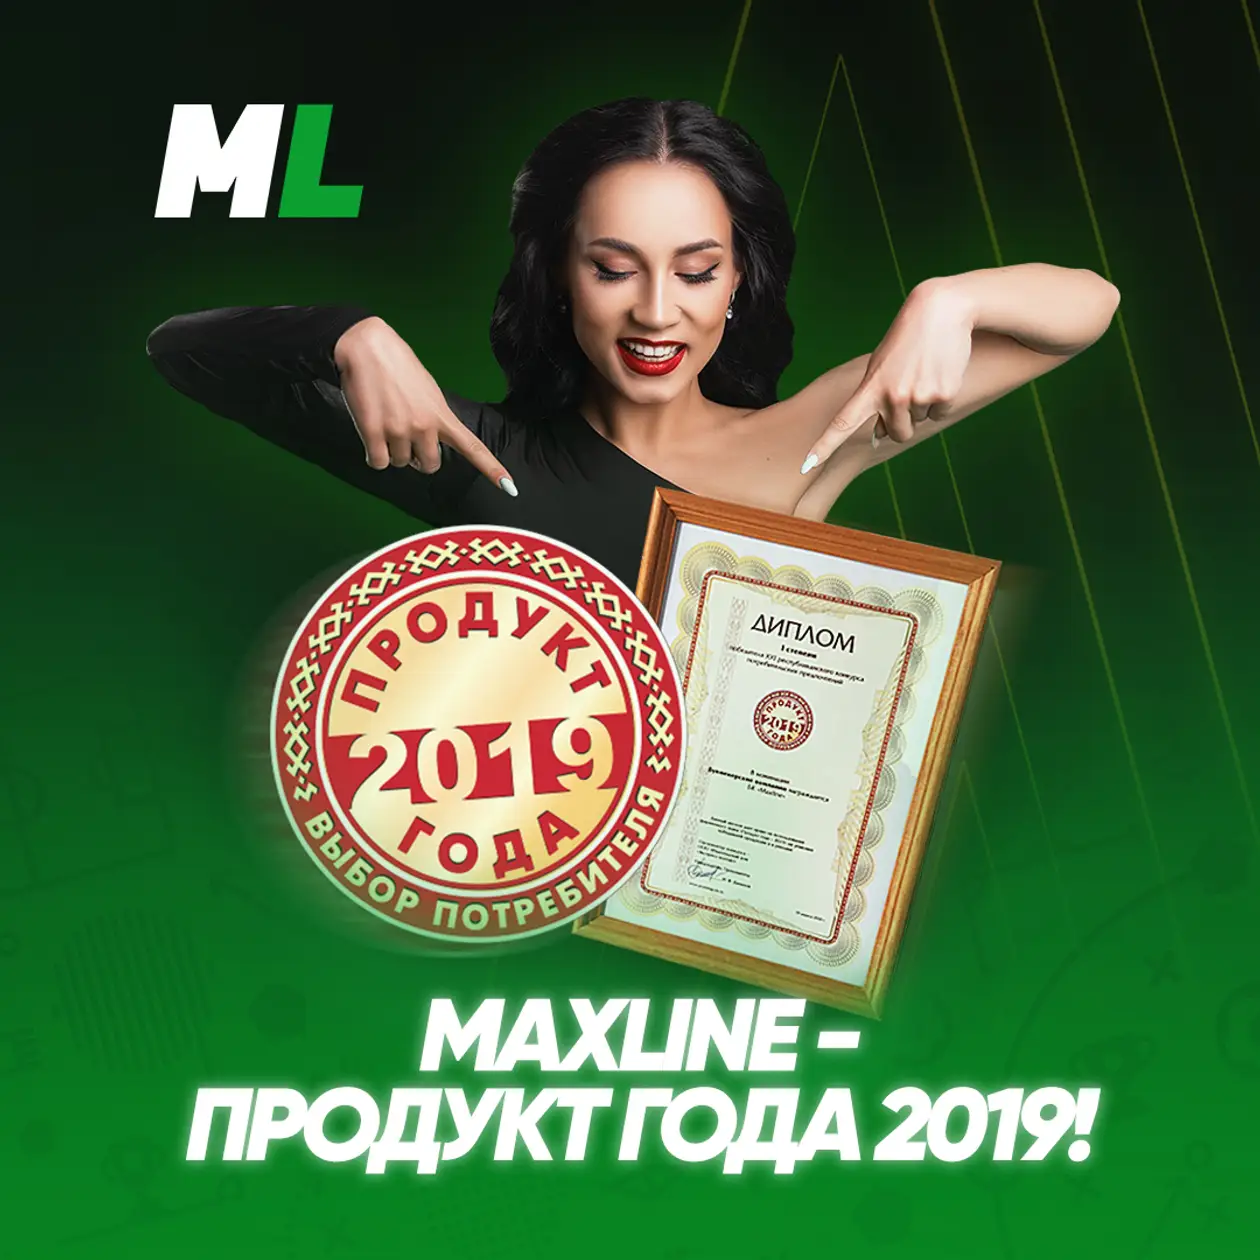 Maxline - победитель конкурса “Продукт года - 2019”!